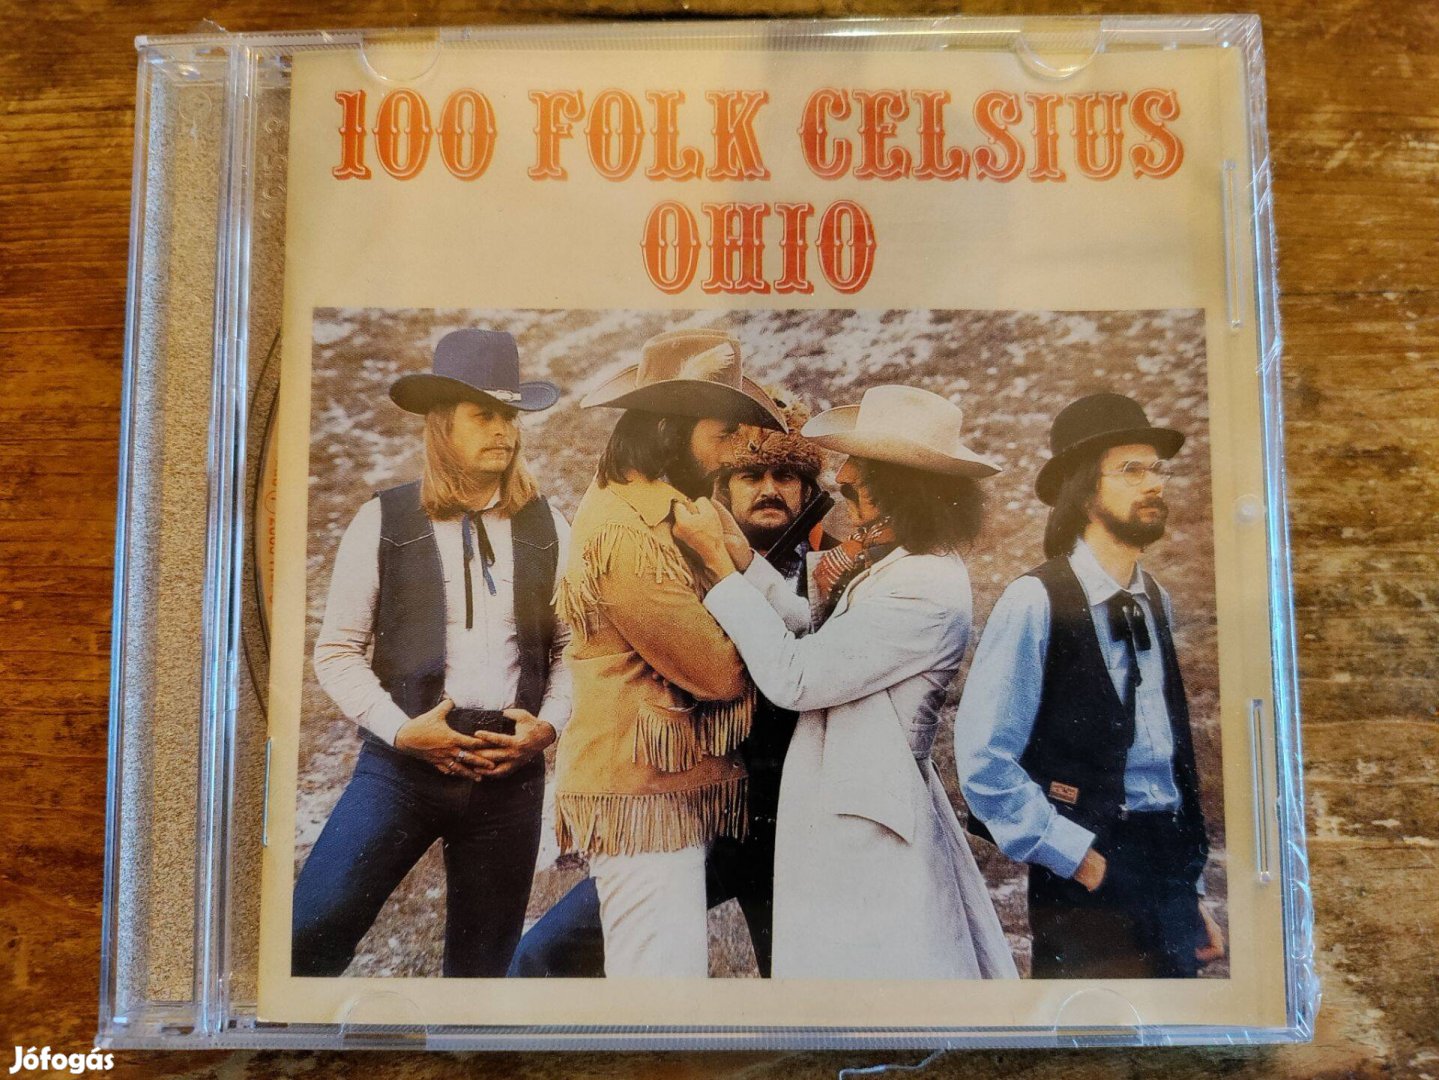 100 Folk Celsius - Ohio CD (Új, bontatlan!)